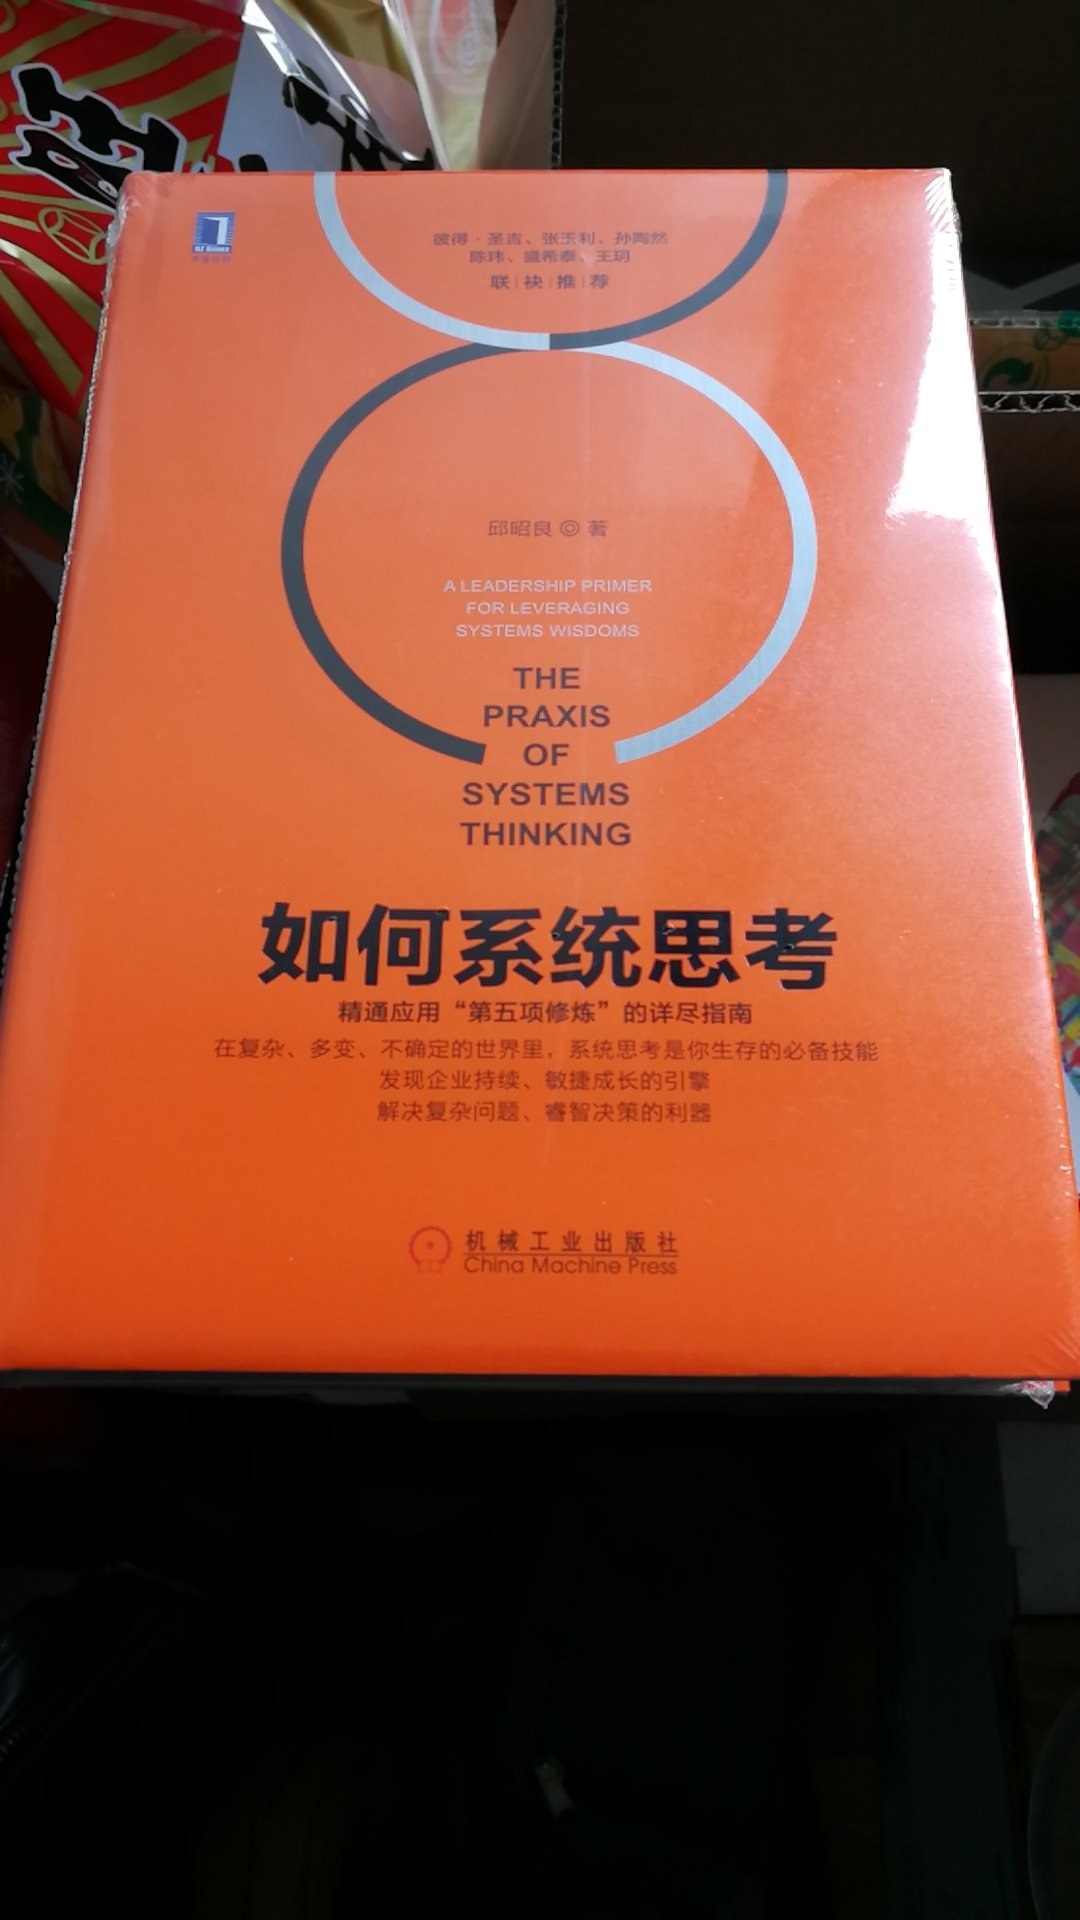 平时我们思考，都是，单一的，单一的，没有系统的如何进行有效的系统的思考，这本书，给予了很好的解释和训练